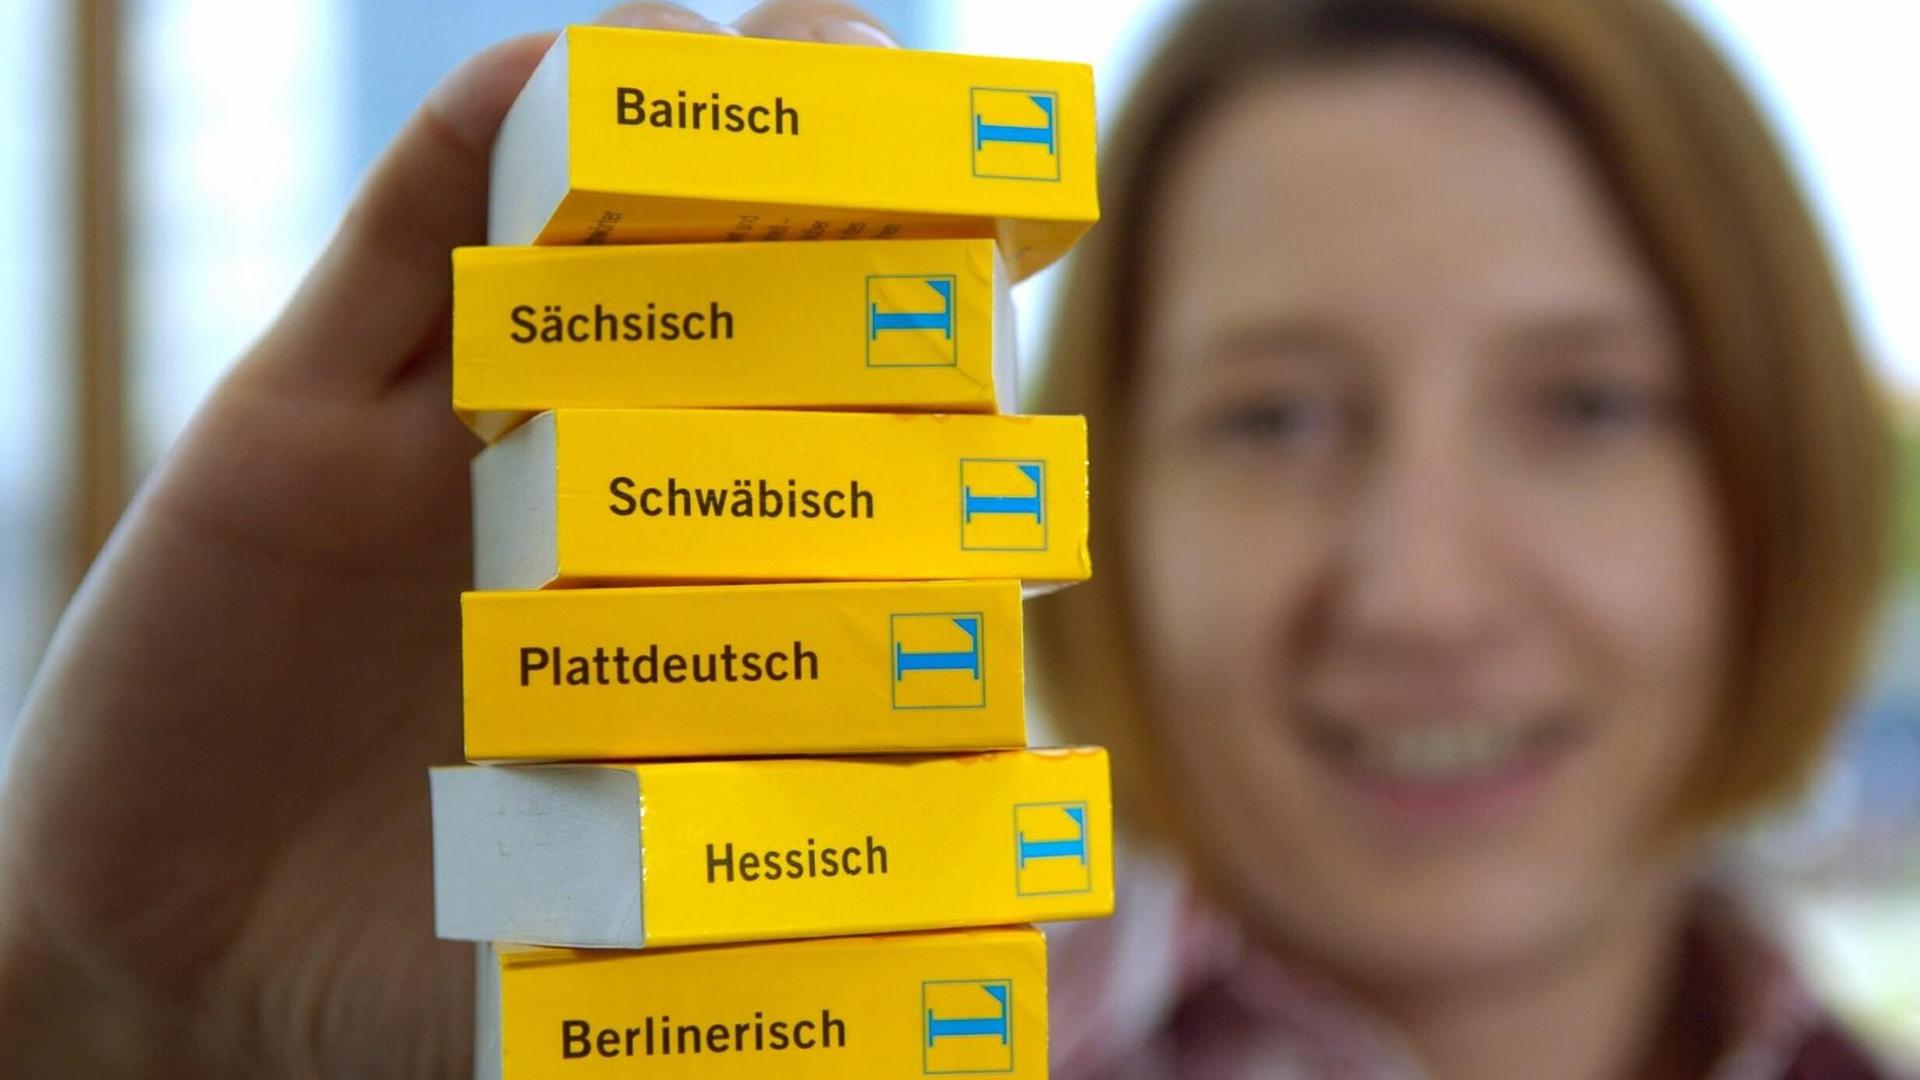 Eine Frau hält einen Stapel Mini-Wörterbücher von Langenscheidt in den Ausgaben Hessisch, Plattdeutsch, Sächsisch, Schwäbisch, Berlinerisch und Bairisch in die Kamera